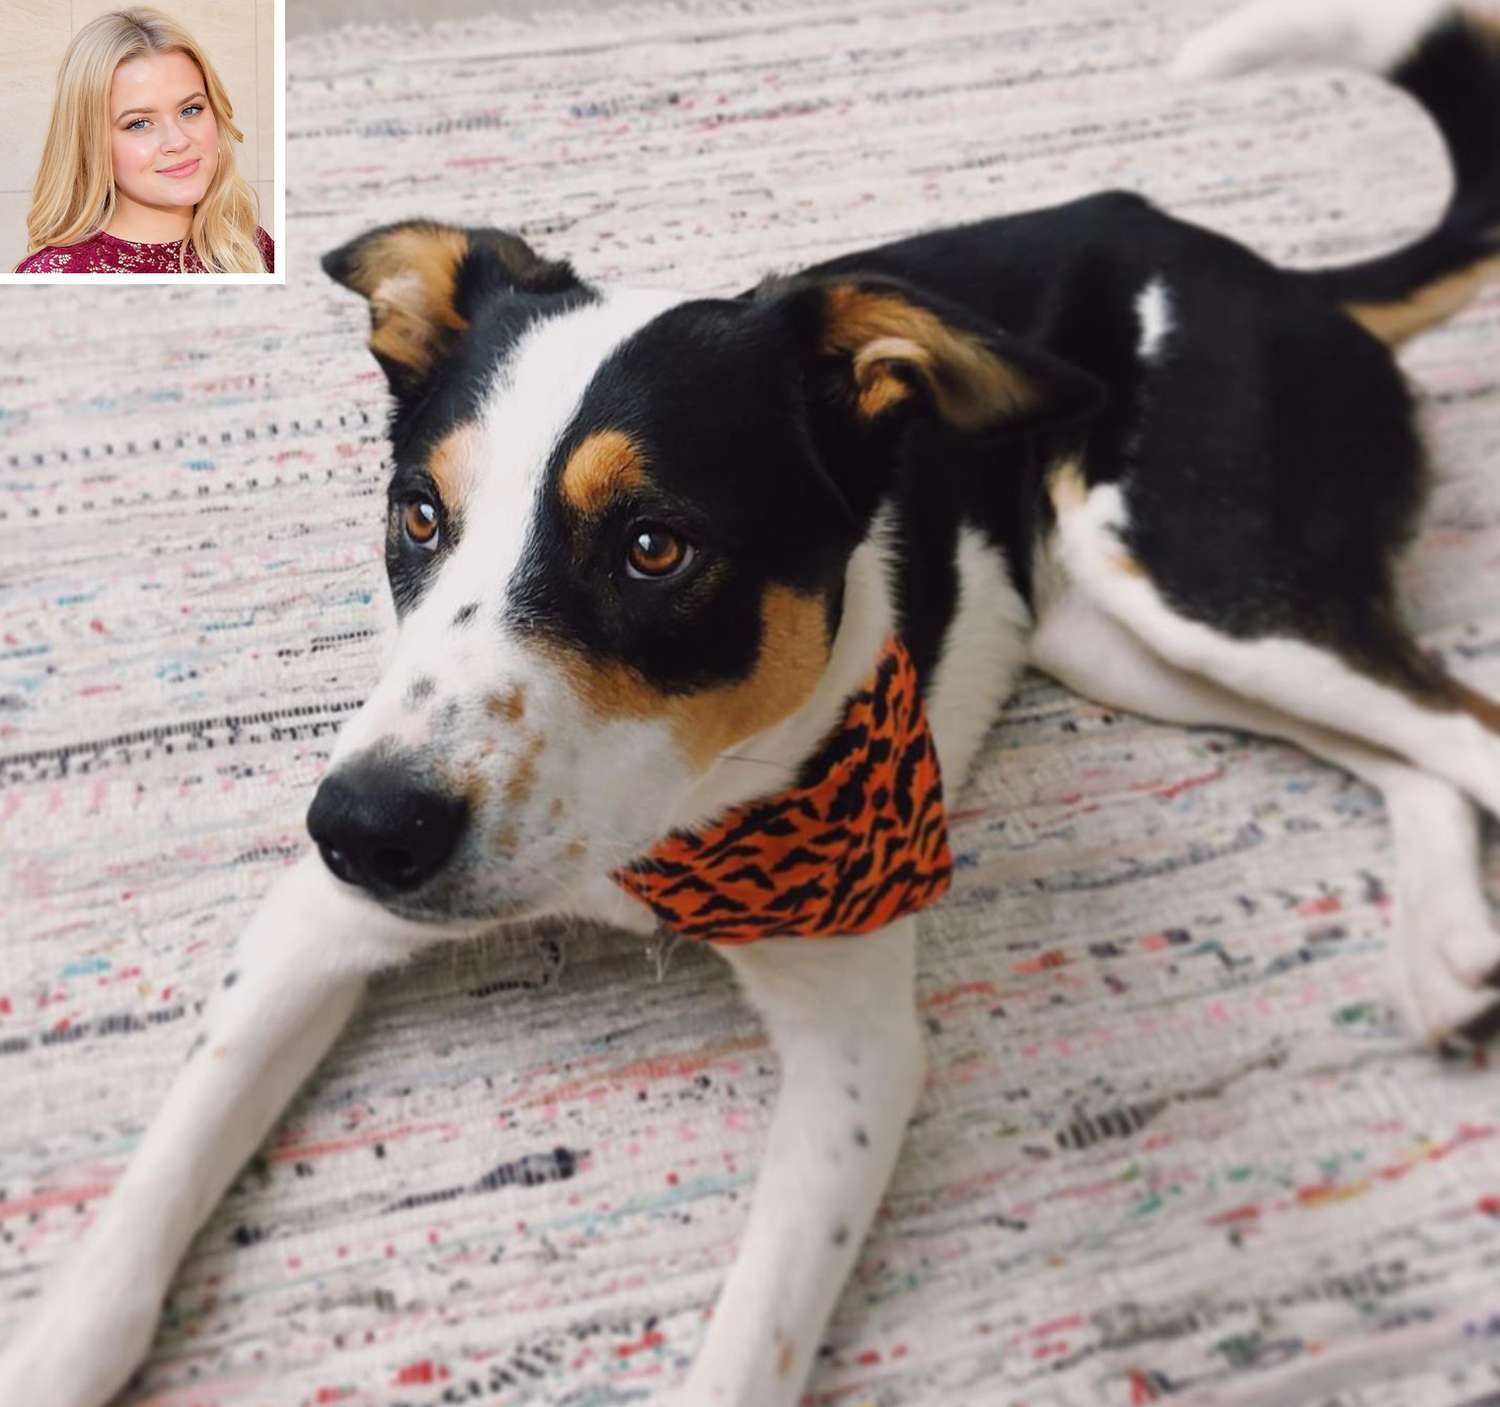 Reese Witherspoons datter Ava Phillippe præsenterer sin nye hund efter sorg over familiehundens død